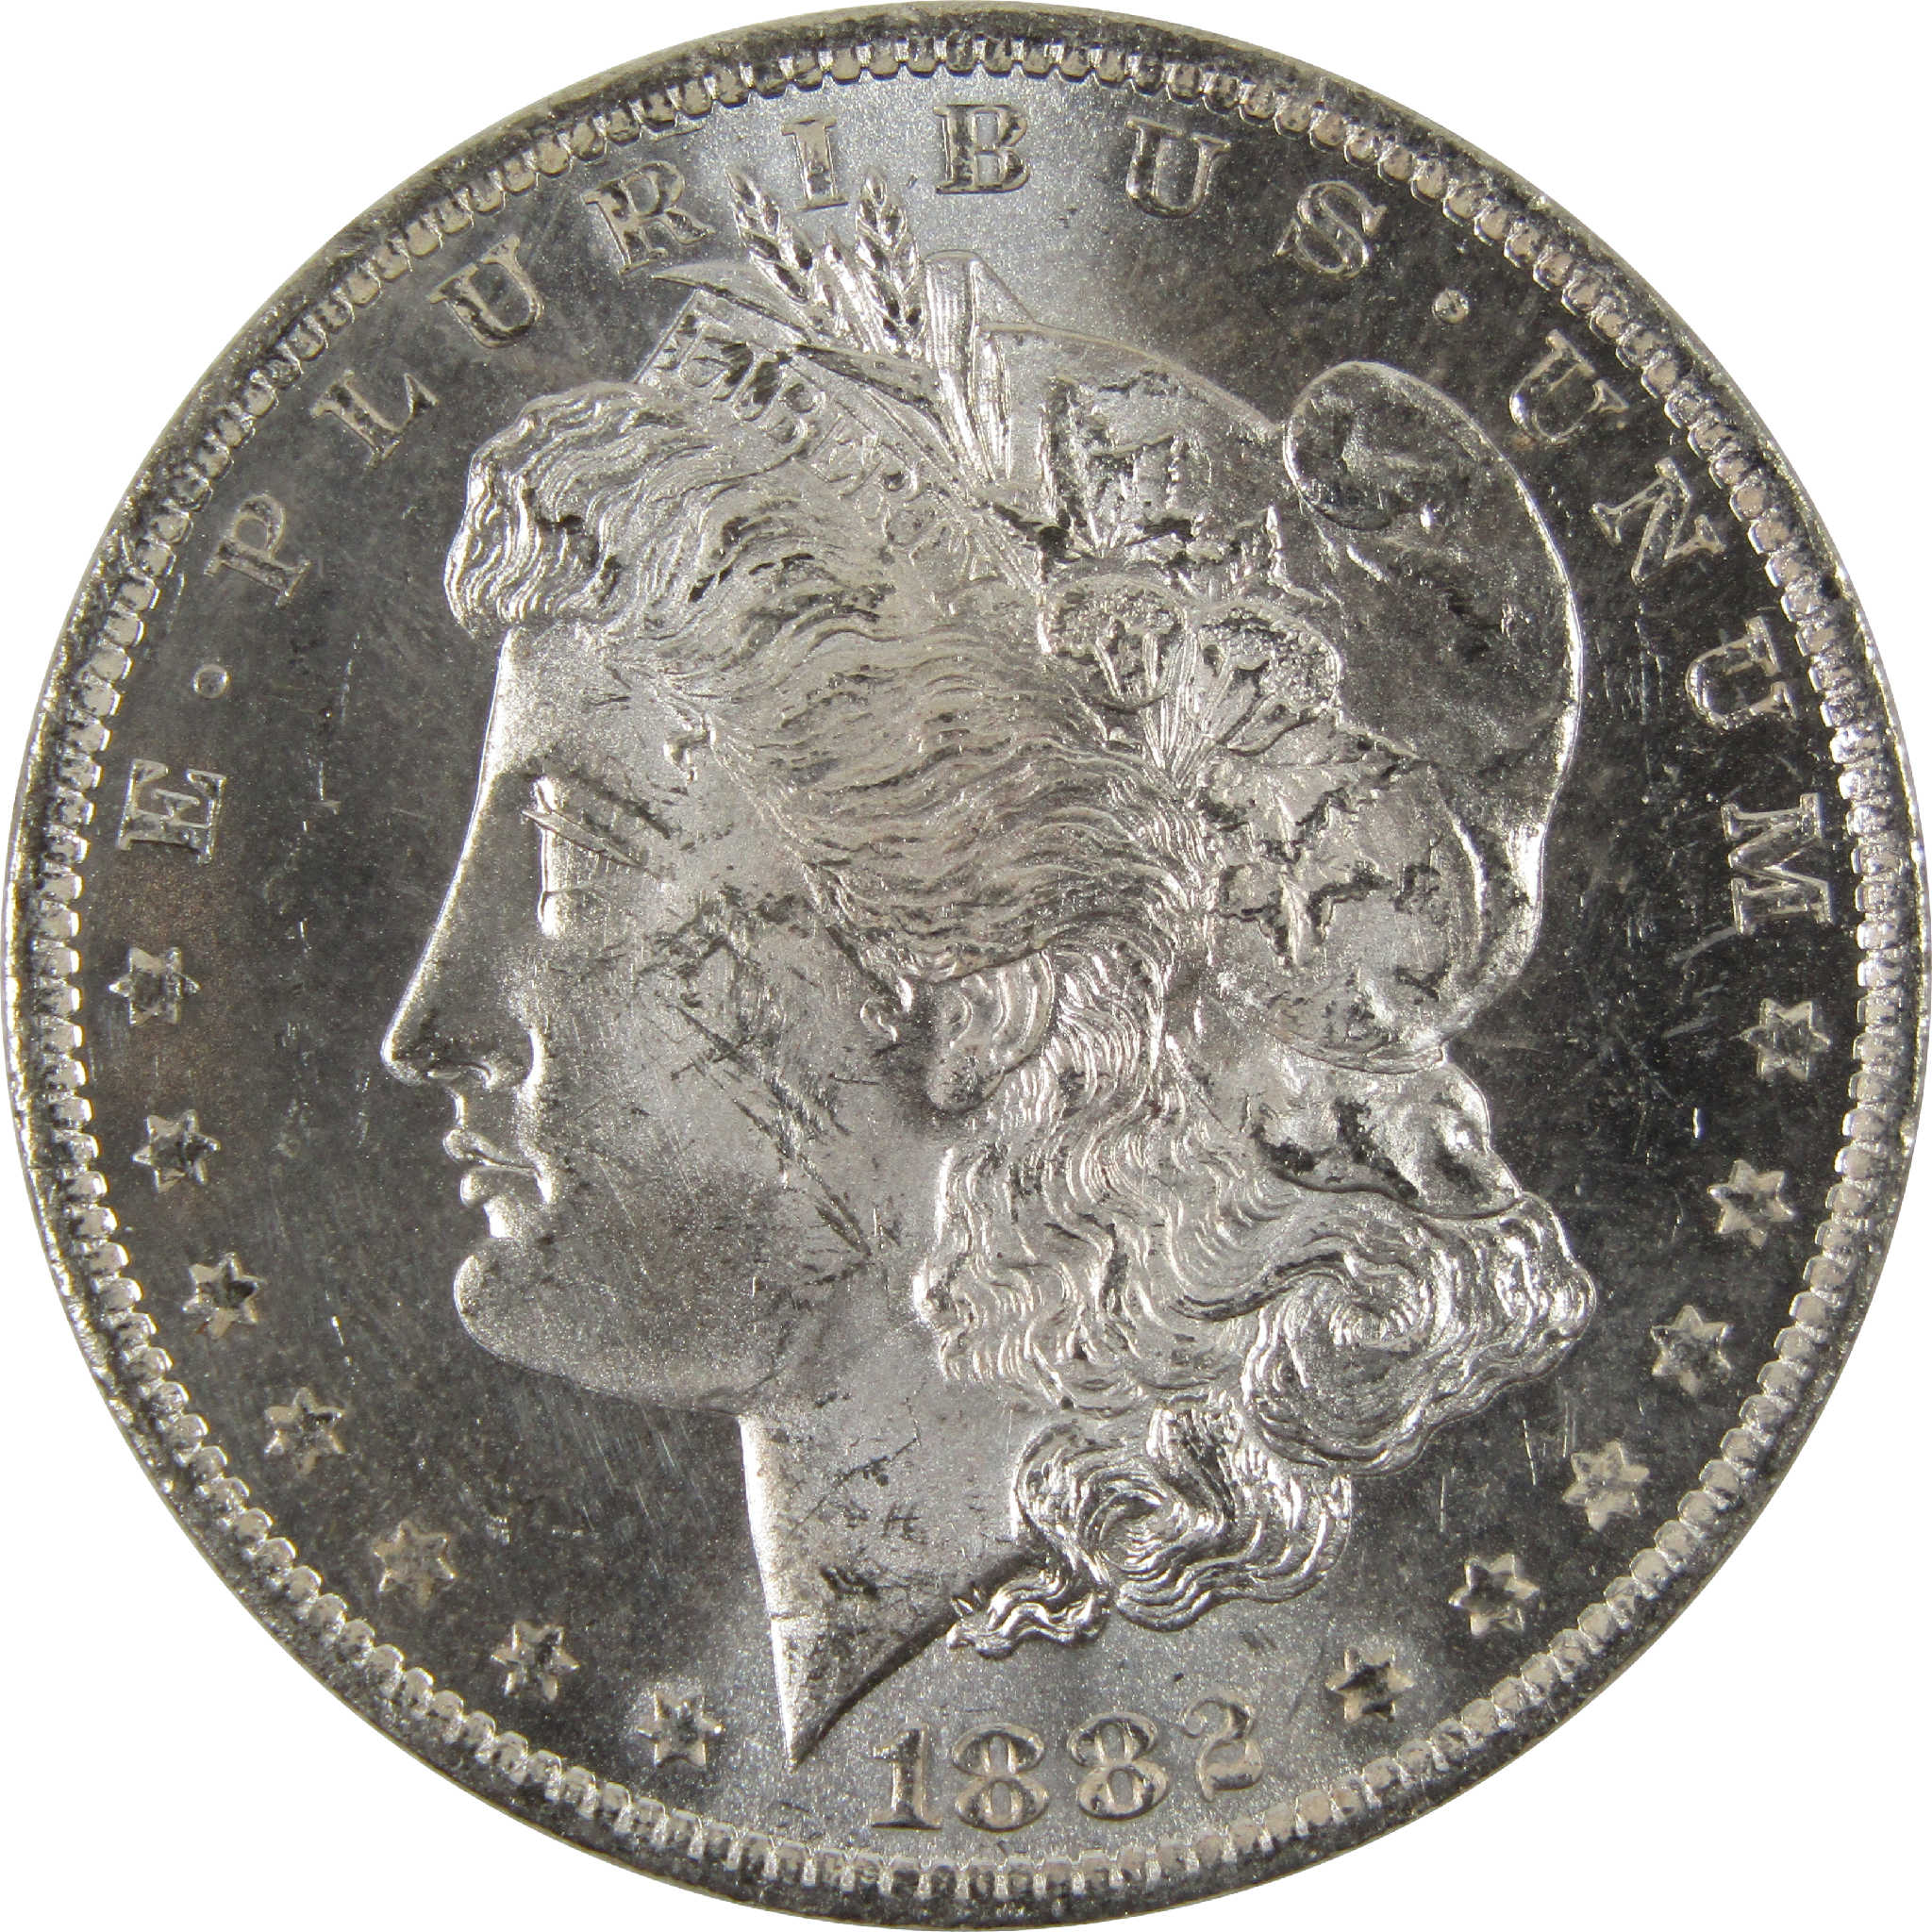 1882 O Morgan Dollar BU Uncirculated 90% Silver $1 Coin SKU:I8898 - Morgan coin - Morgan silver dollar - Morgan silver dollar for sale - Profile Coins &amp; Collectibles